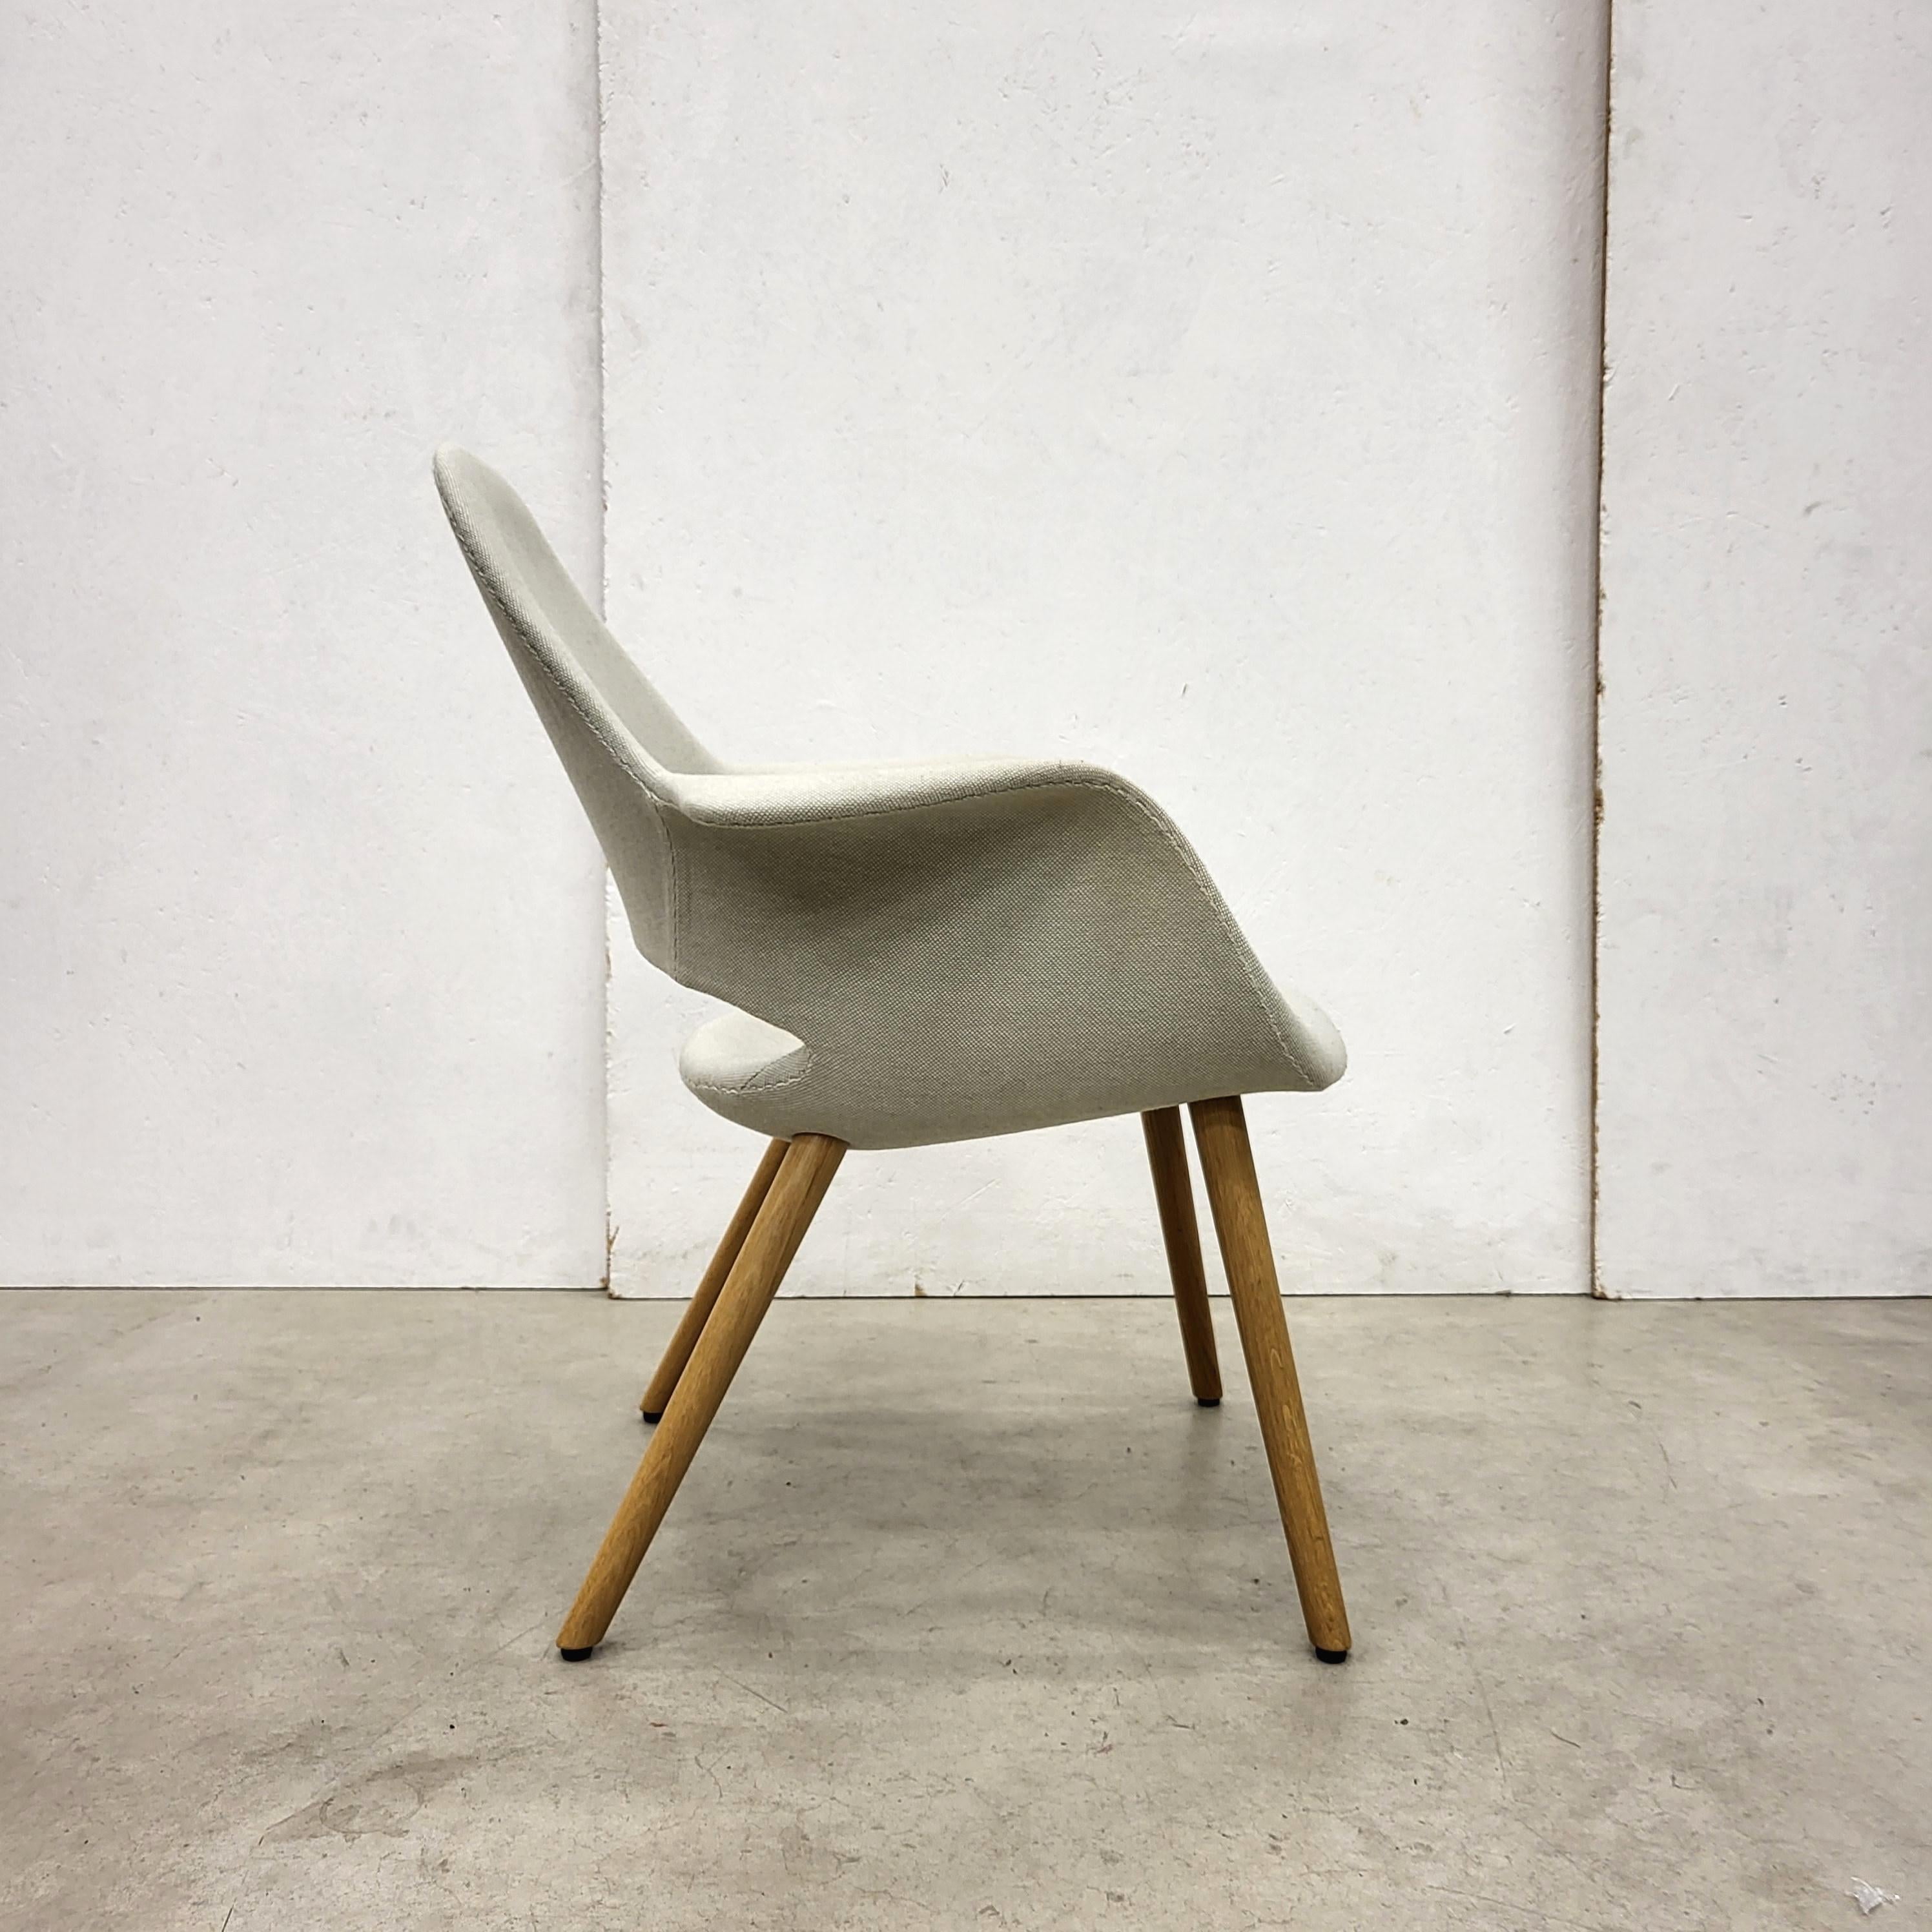 American Vitra Organic Chair by Charles Eames & Eero Saarinen